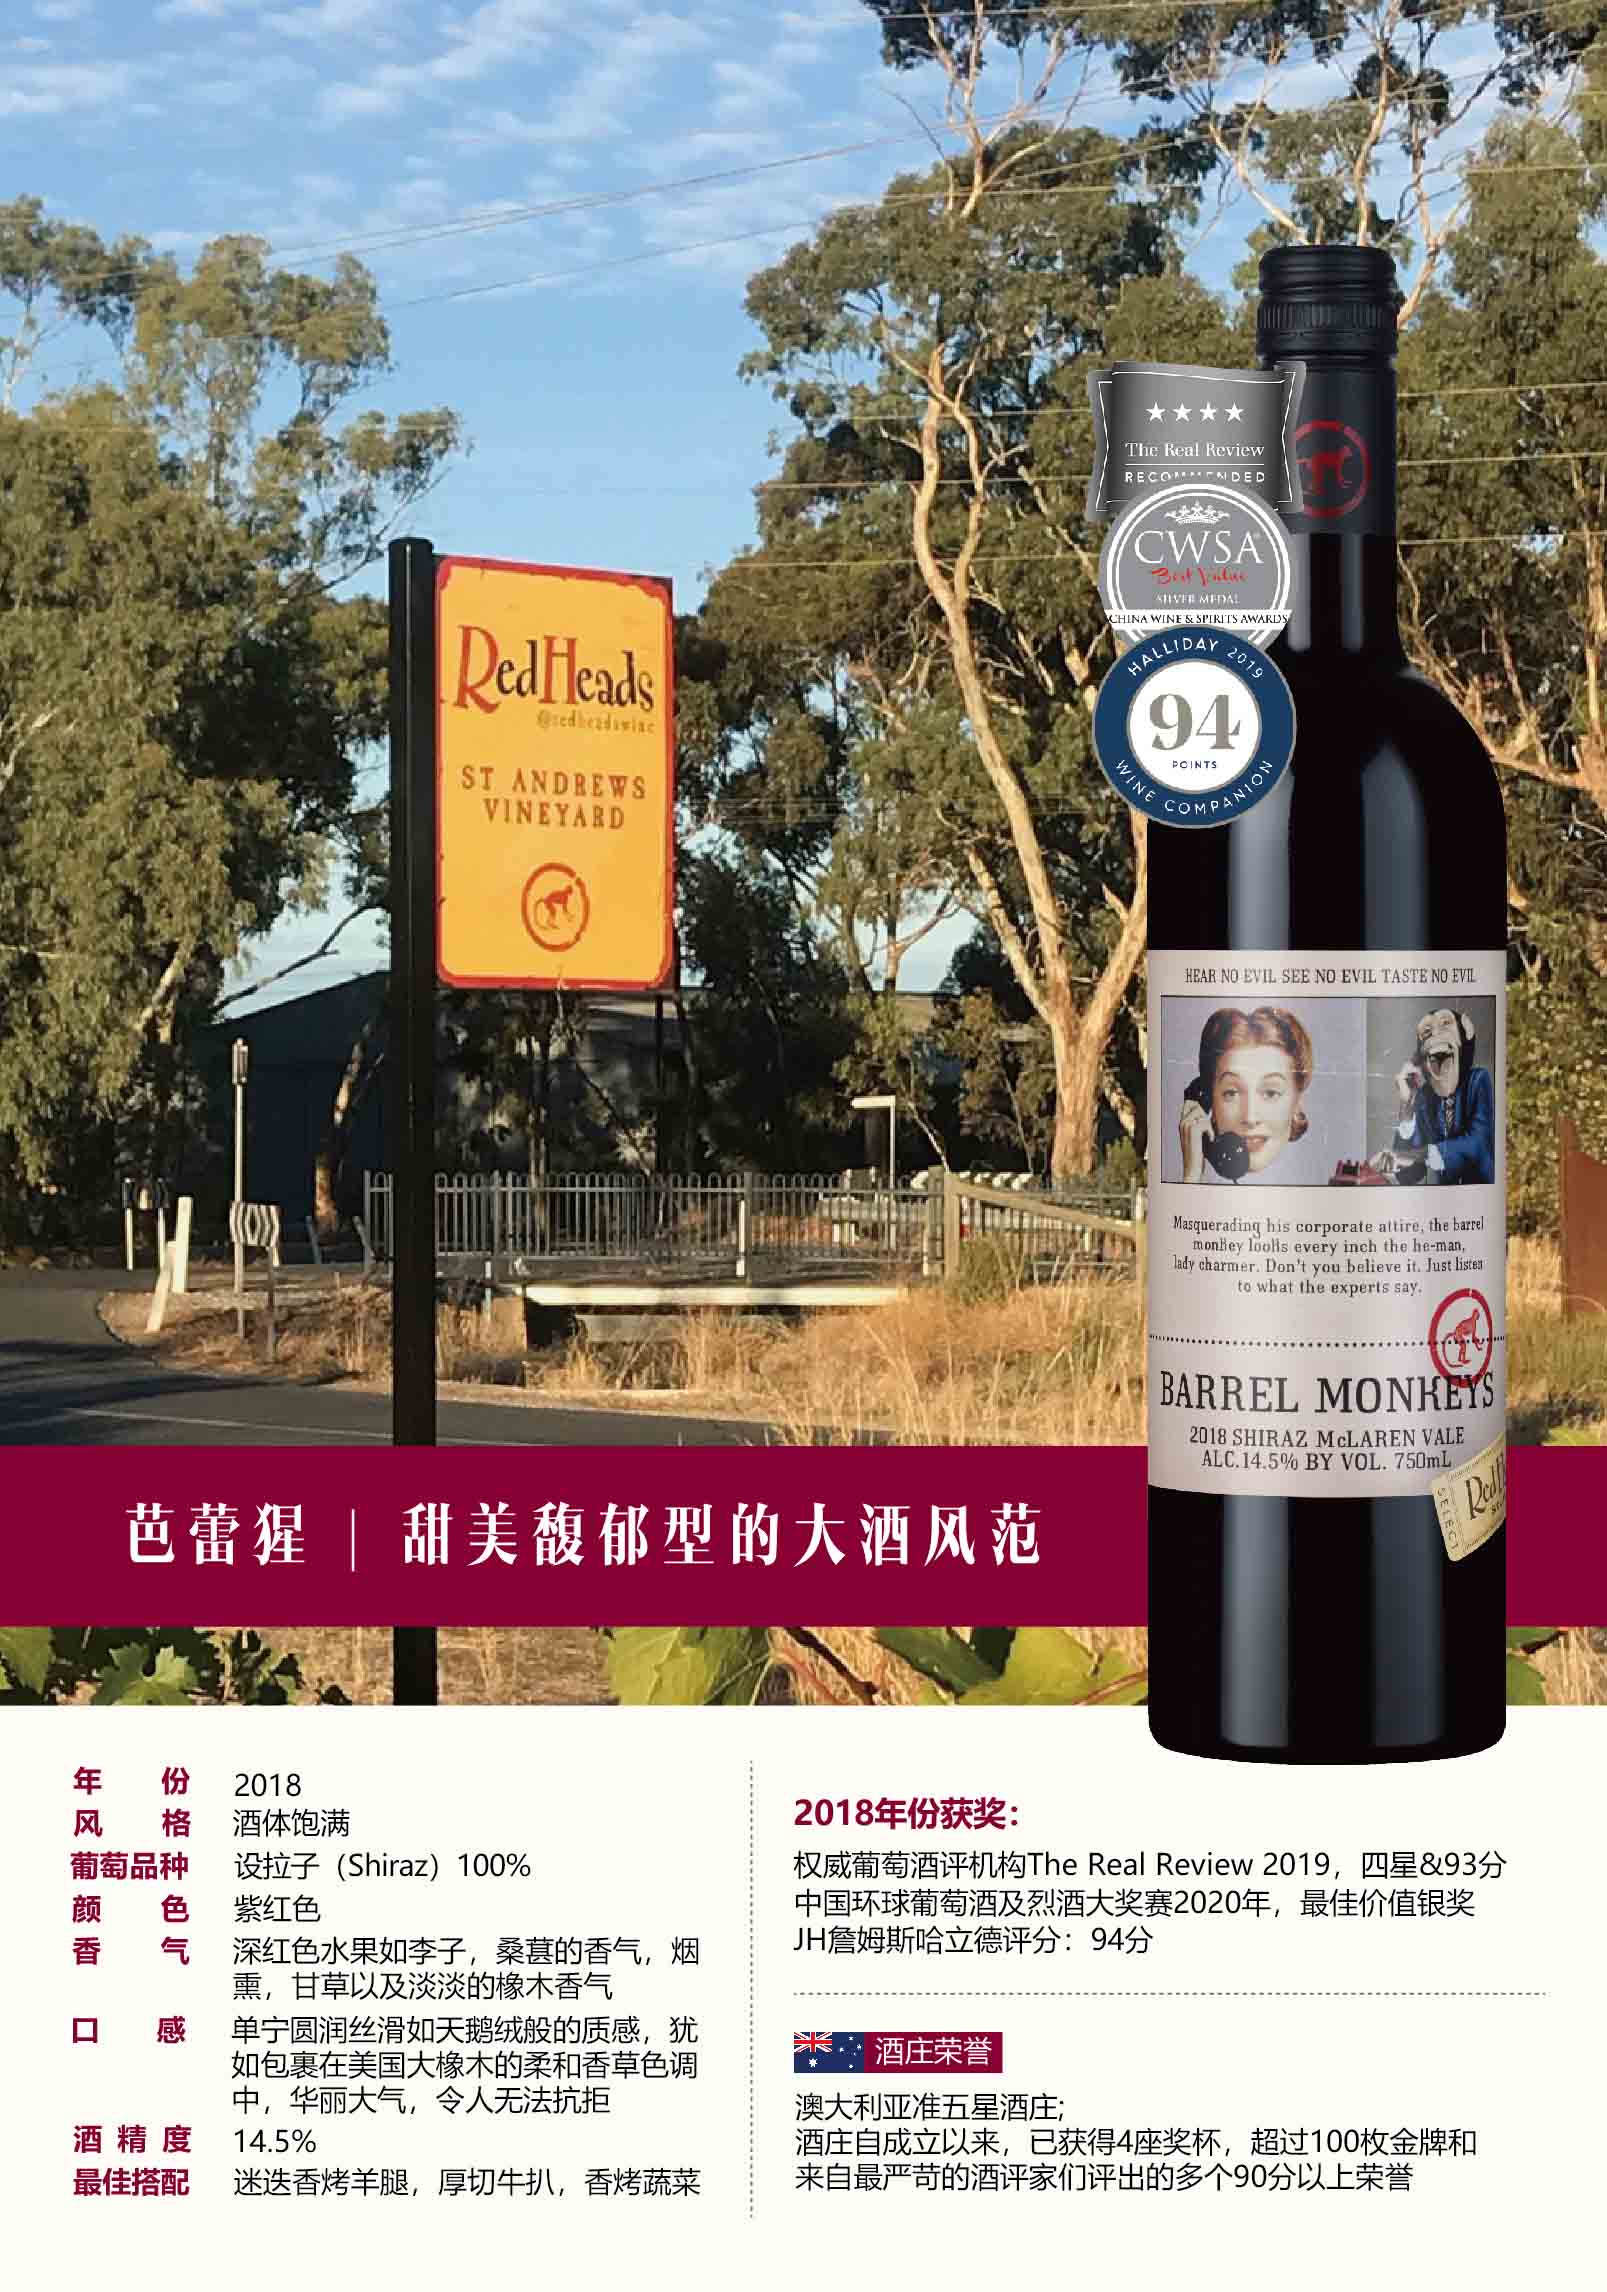 澳大利亚红头酒庄芭蕾猩红葡萄酒 2018